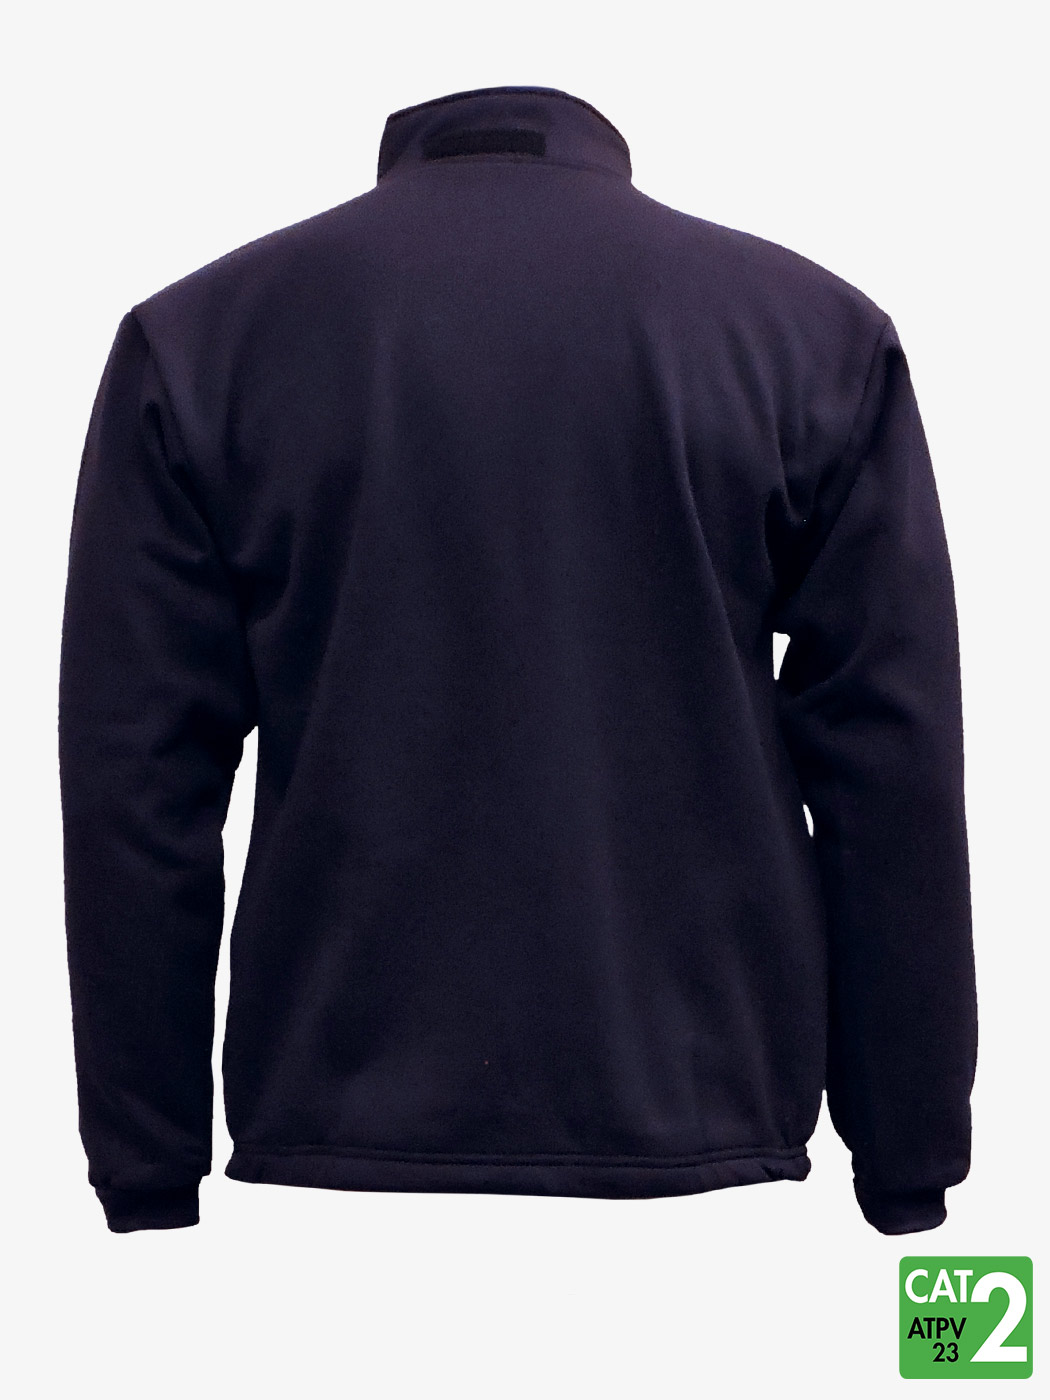 Flame Resistant Workwear IFR Fleece (FR) Zip Jacket Full 